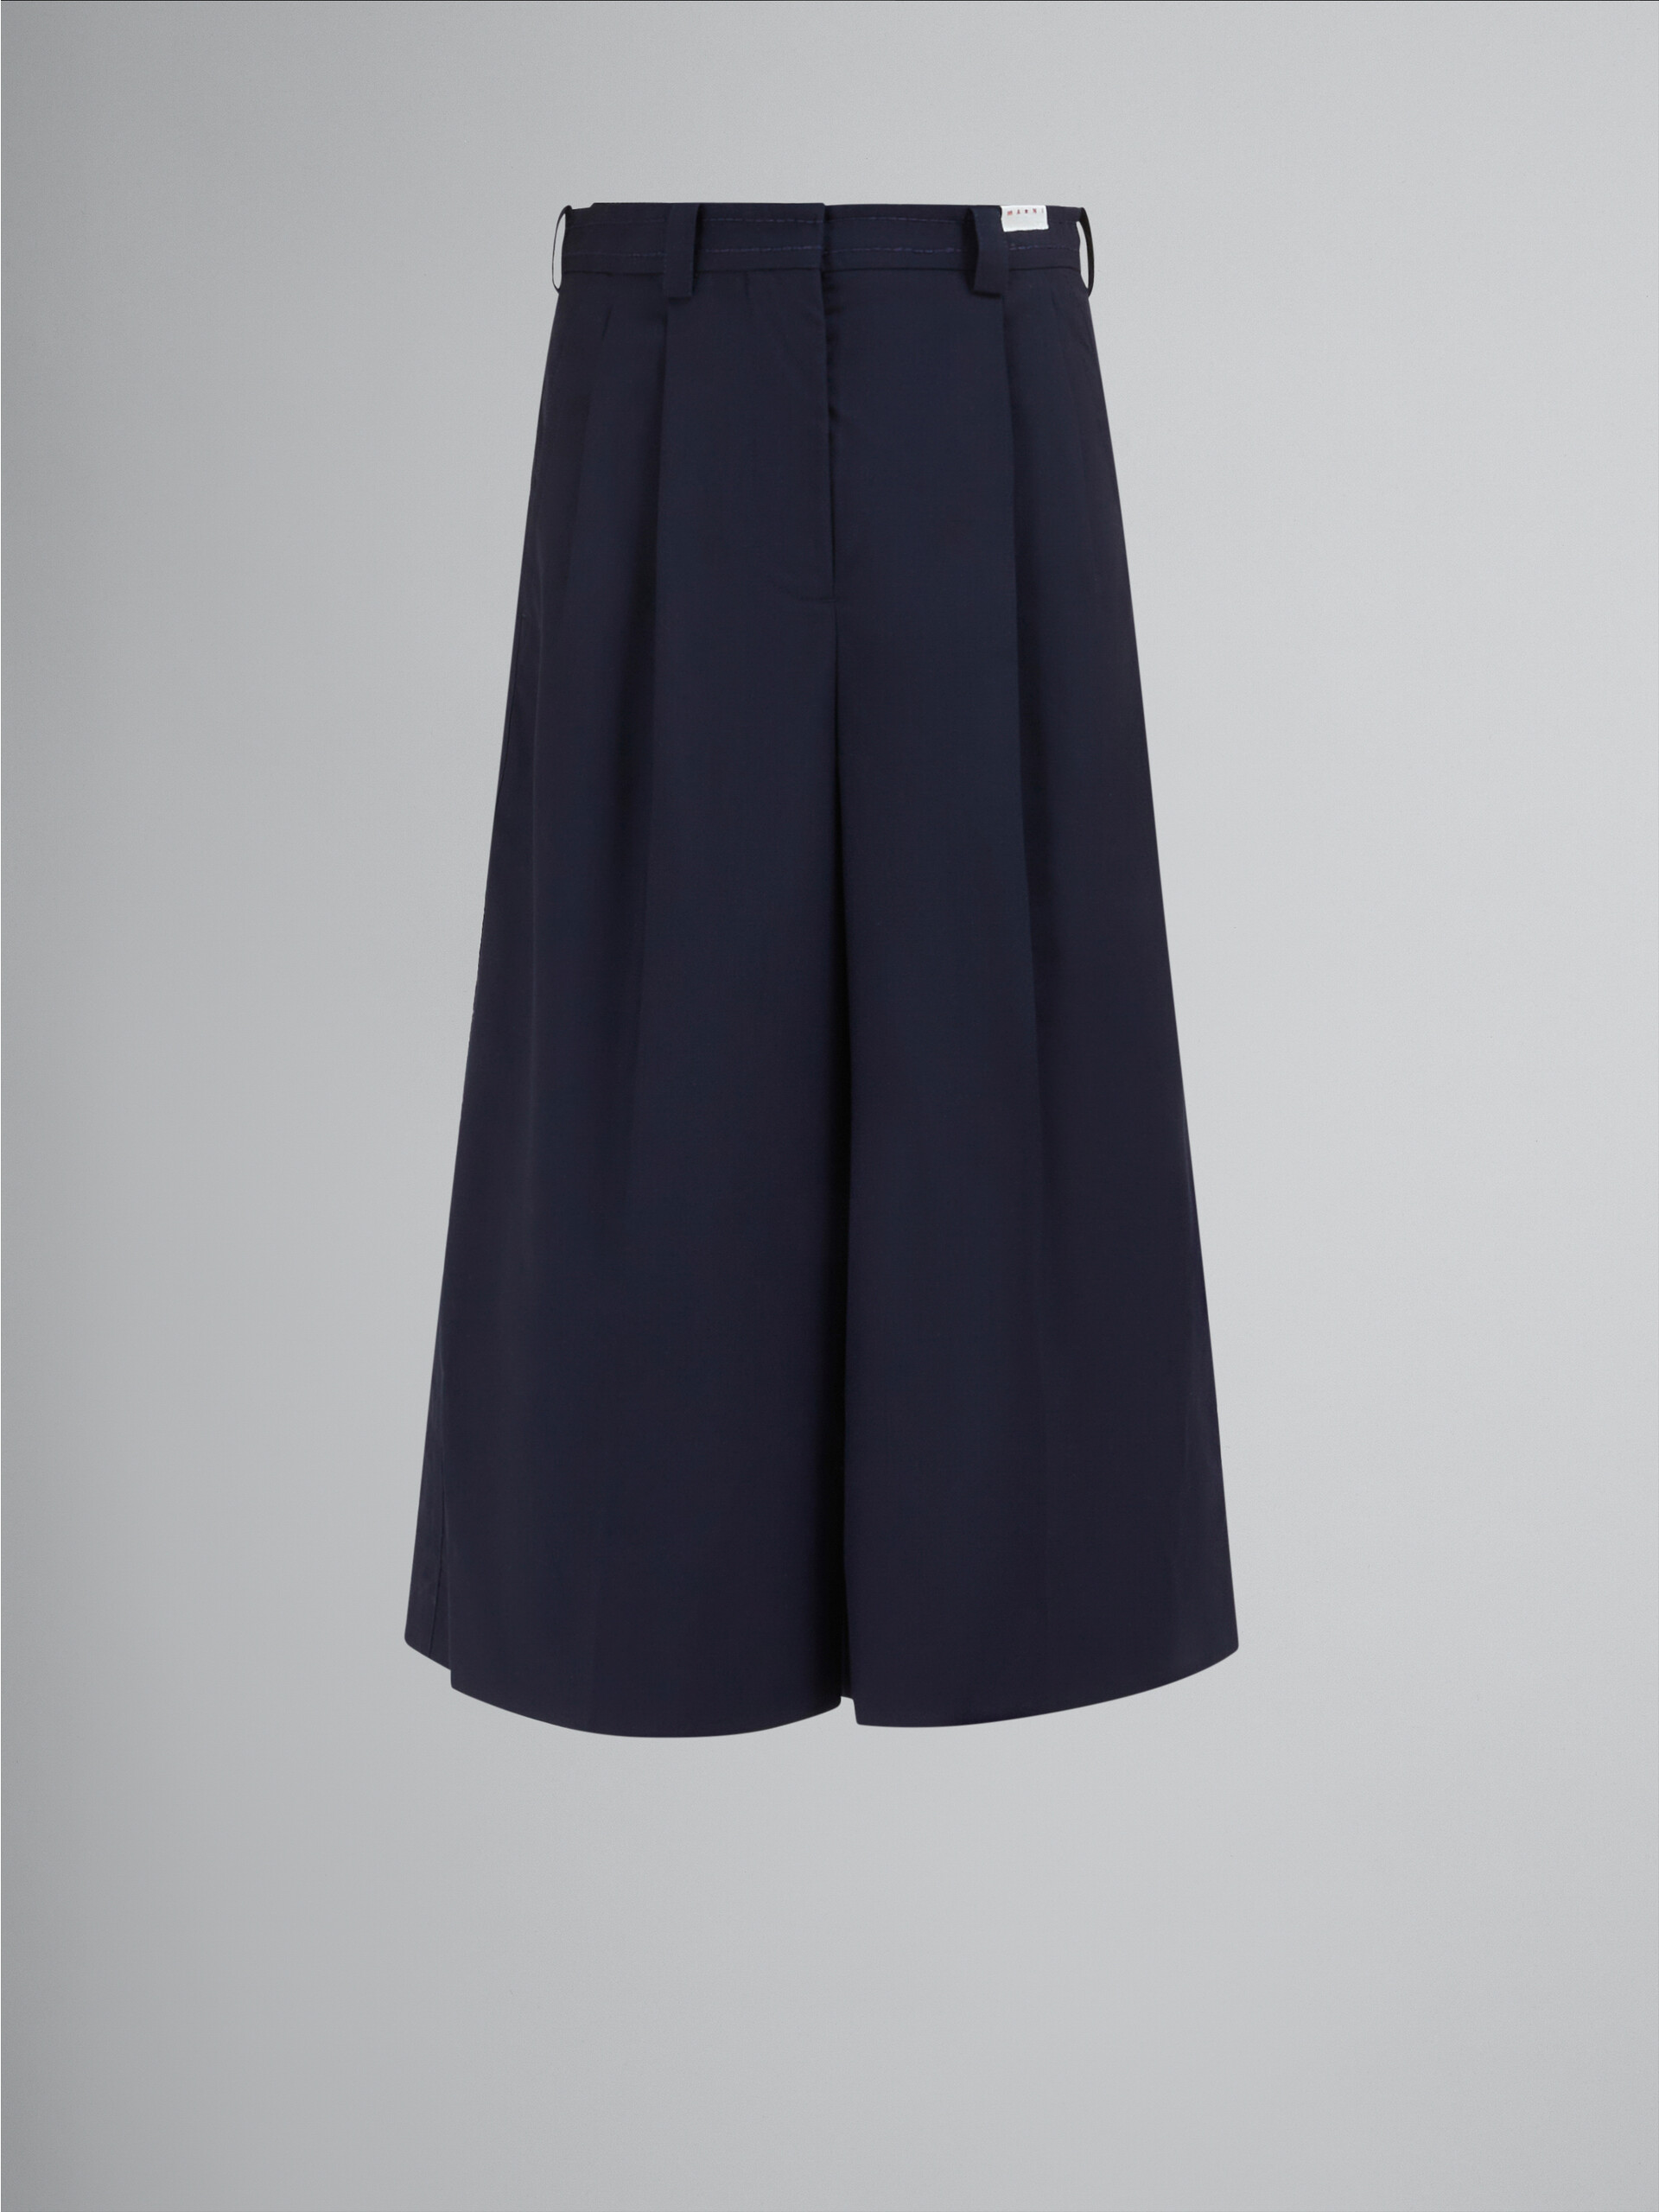 Kurz geschnittene Hose aus dunkelblauer Tropenwolle - Hosen - Image 1